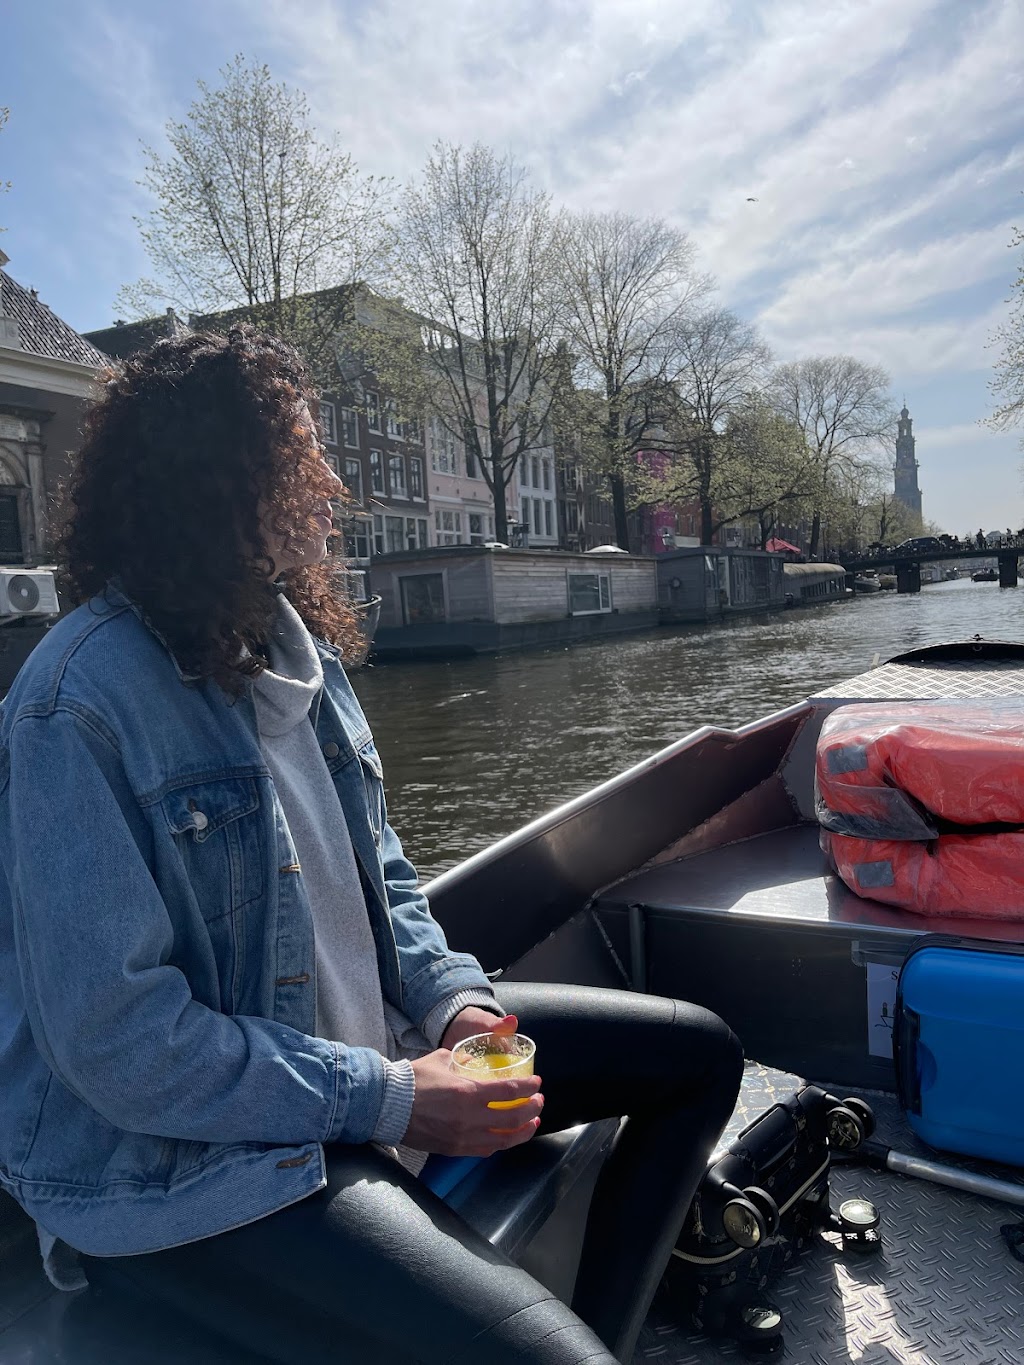 Boats4rent | Dock in canal, Nassaukade 153G, 1053 LK Amsterdam, Netherlands | Phone: 020 700 9377